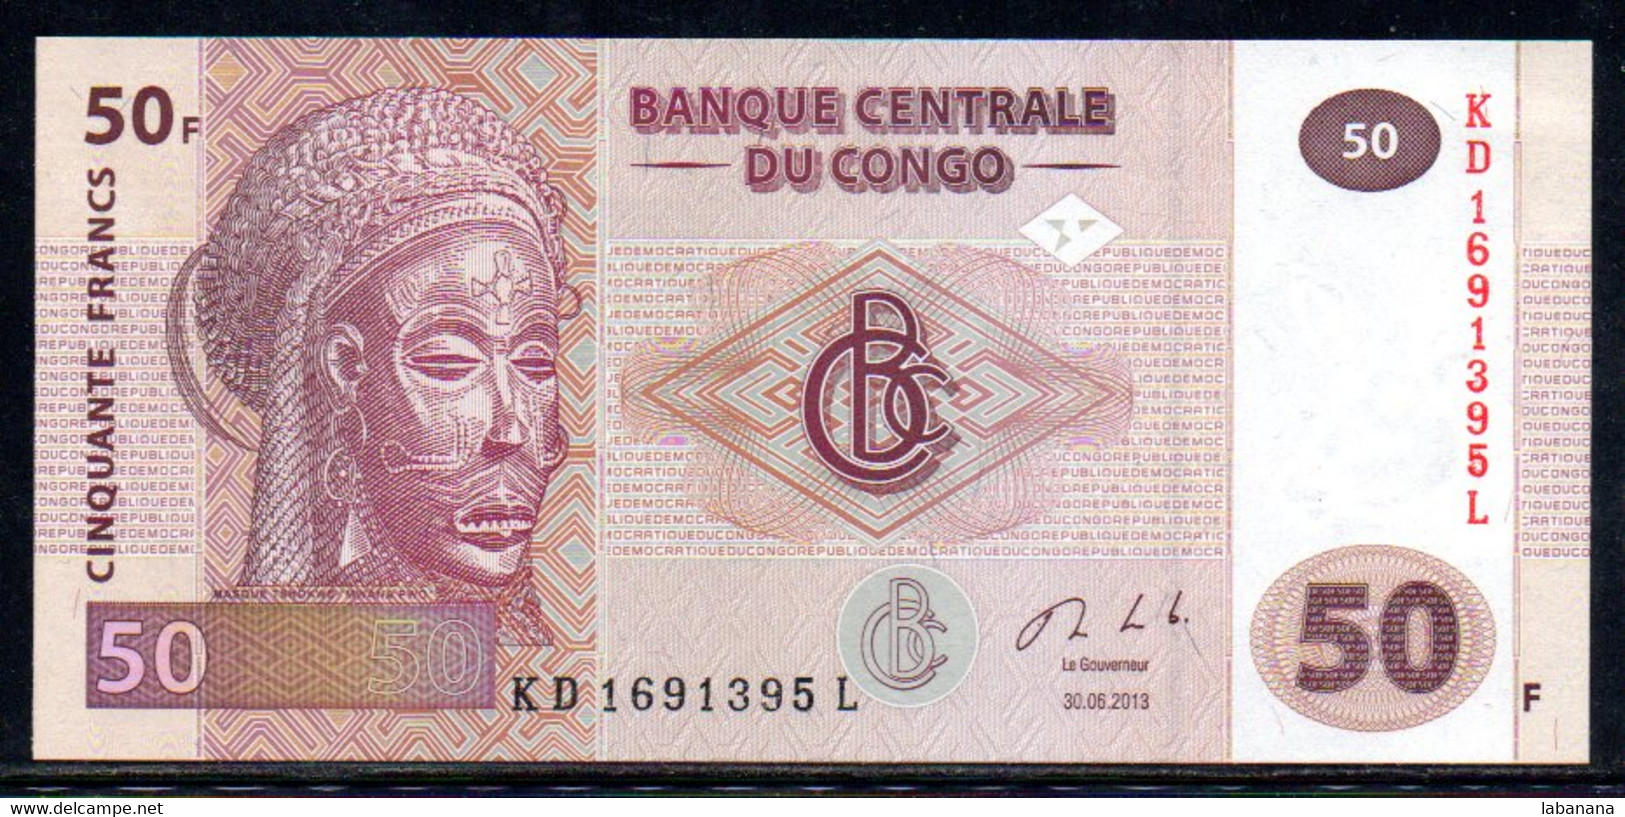 Congo 50fr 2013 KD169L Neuf - République Démocratique Du Congo & Zaïre